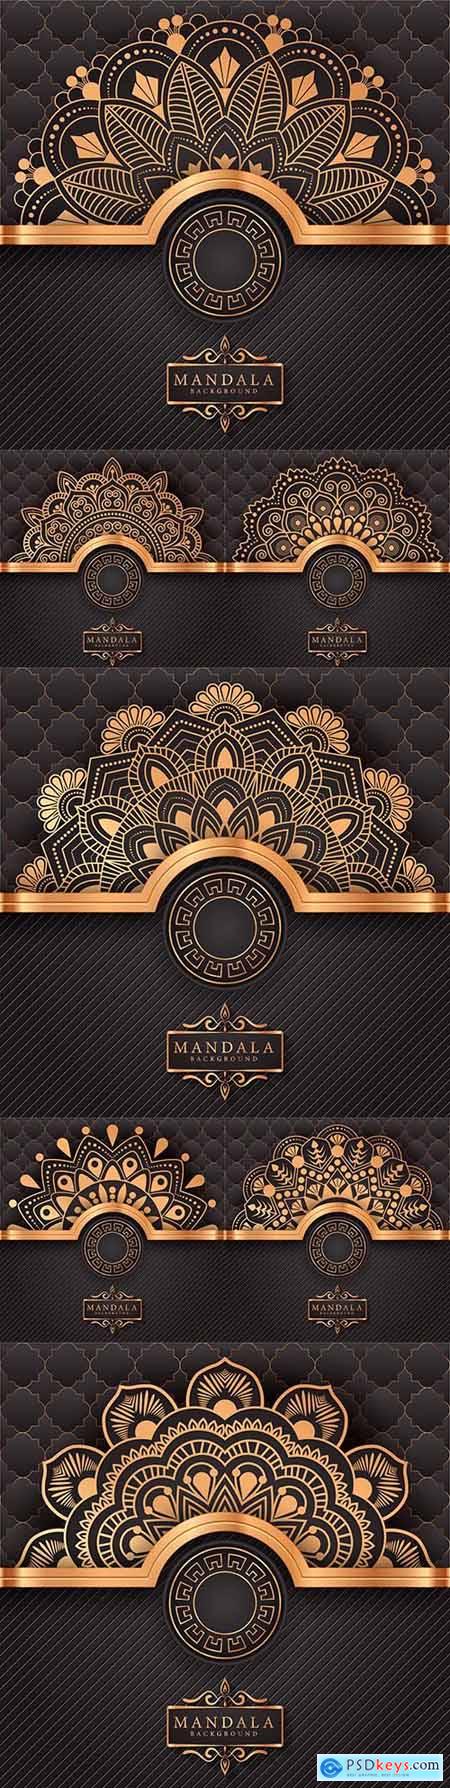 Mandala creative luxury gold design background 5